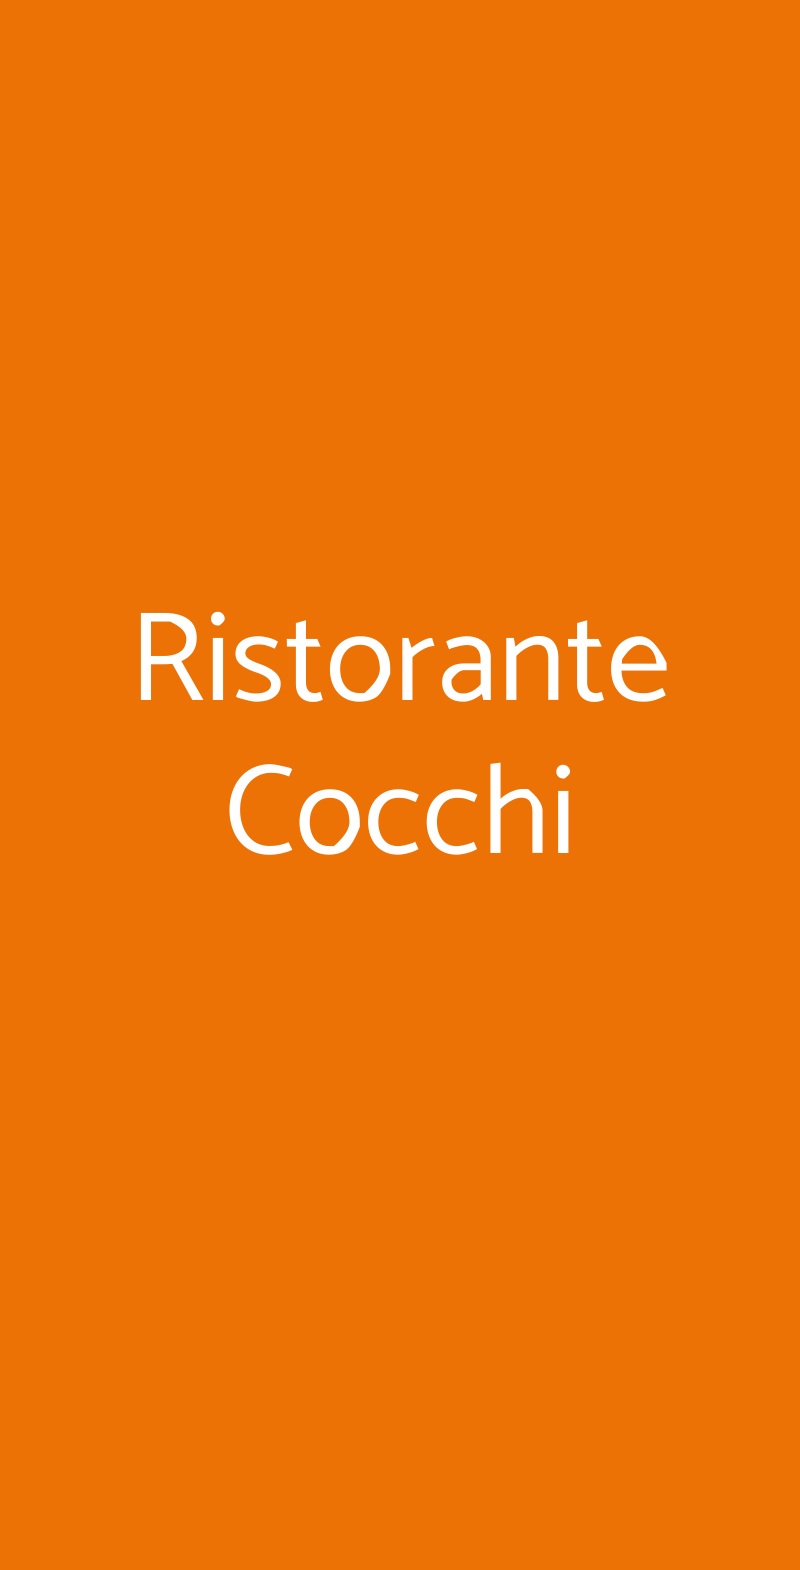 Ristorante Cocchi Parma menù 1 pagina